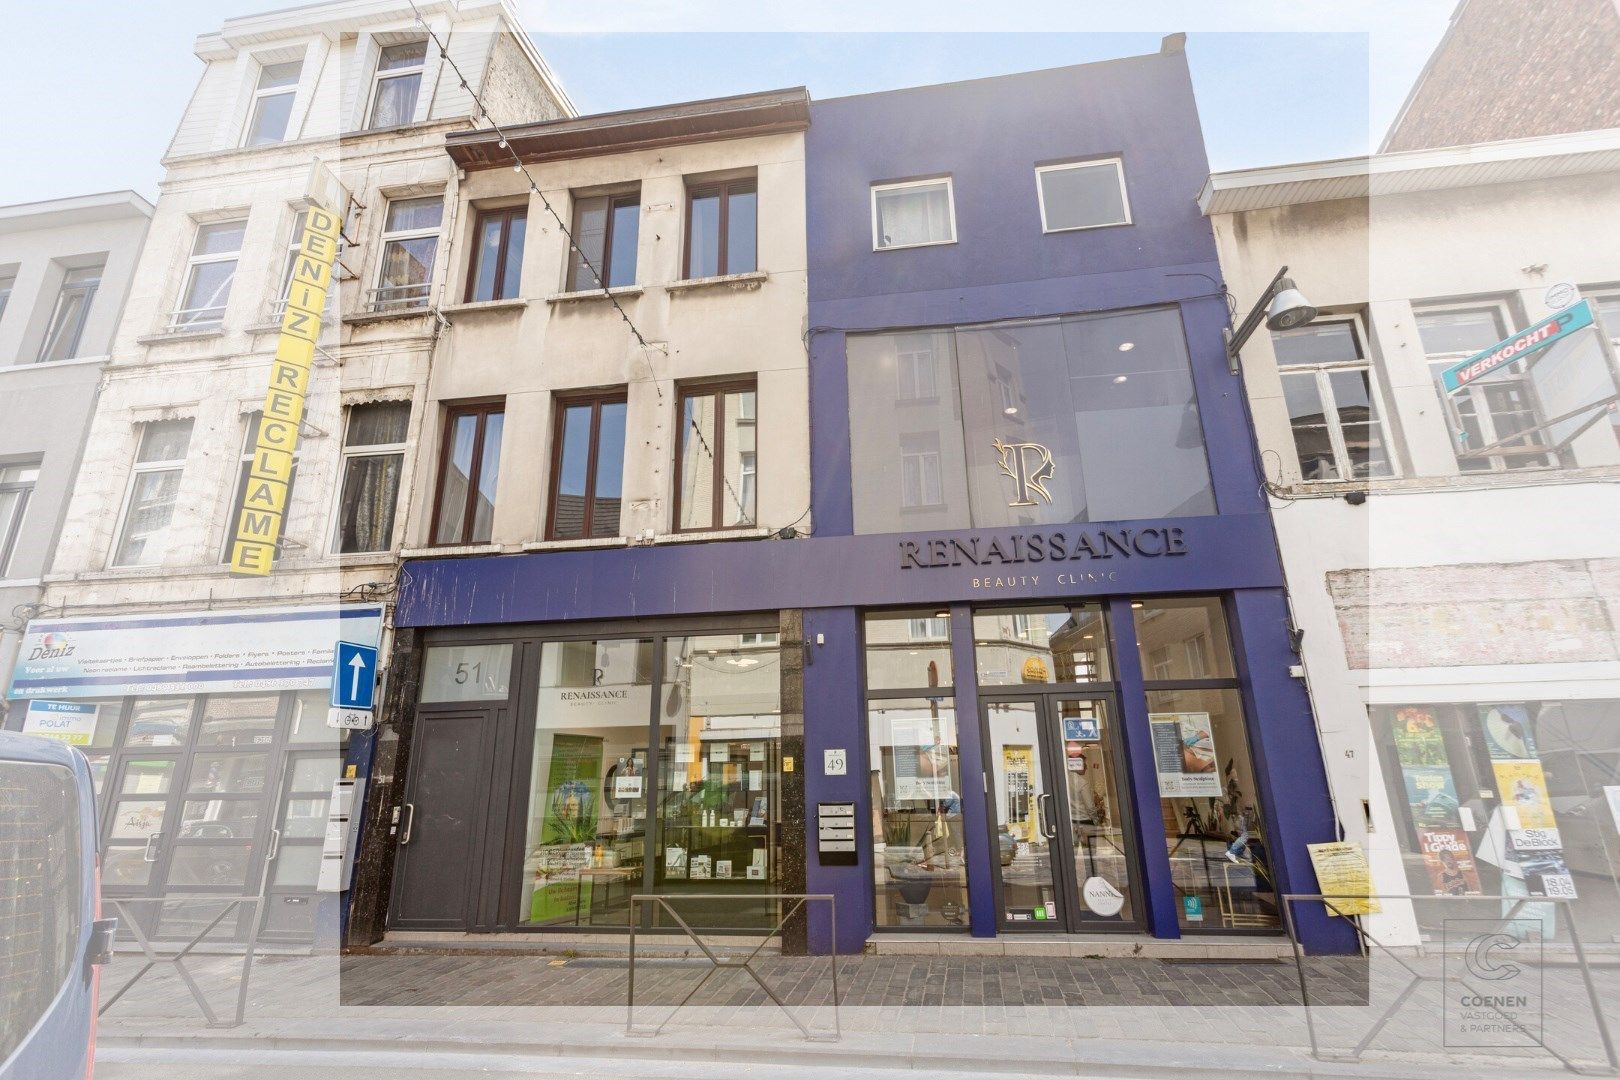 Appartement te huur Driekoningenstraat 49 - 51 - 2600 Antwerpen